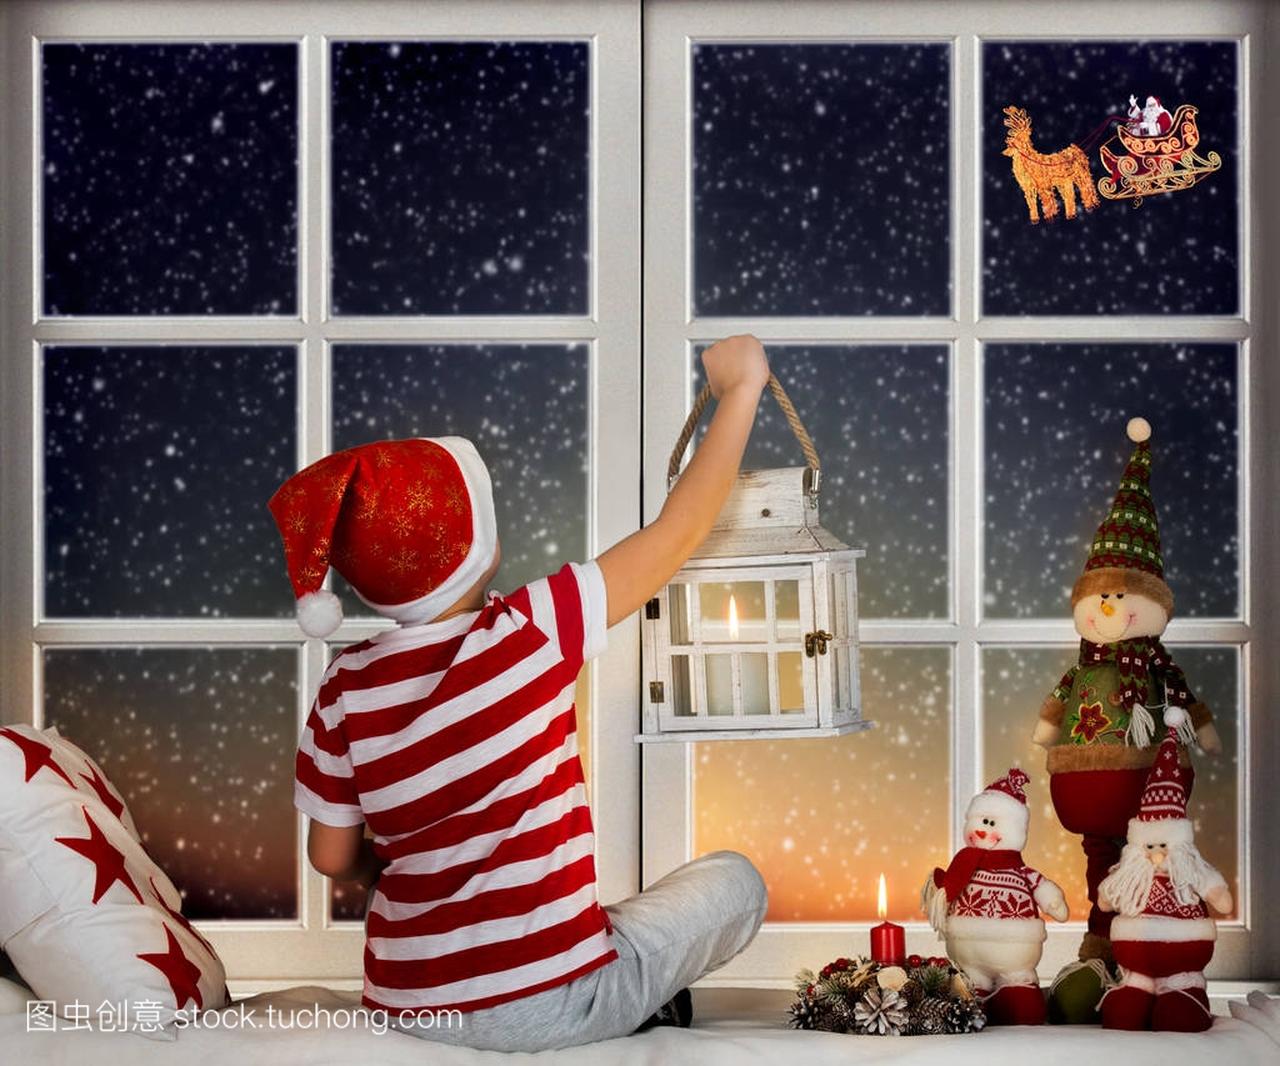 圣诞快乐, 节日愉快!小男孩坐在窗前, 看着圣诞